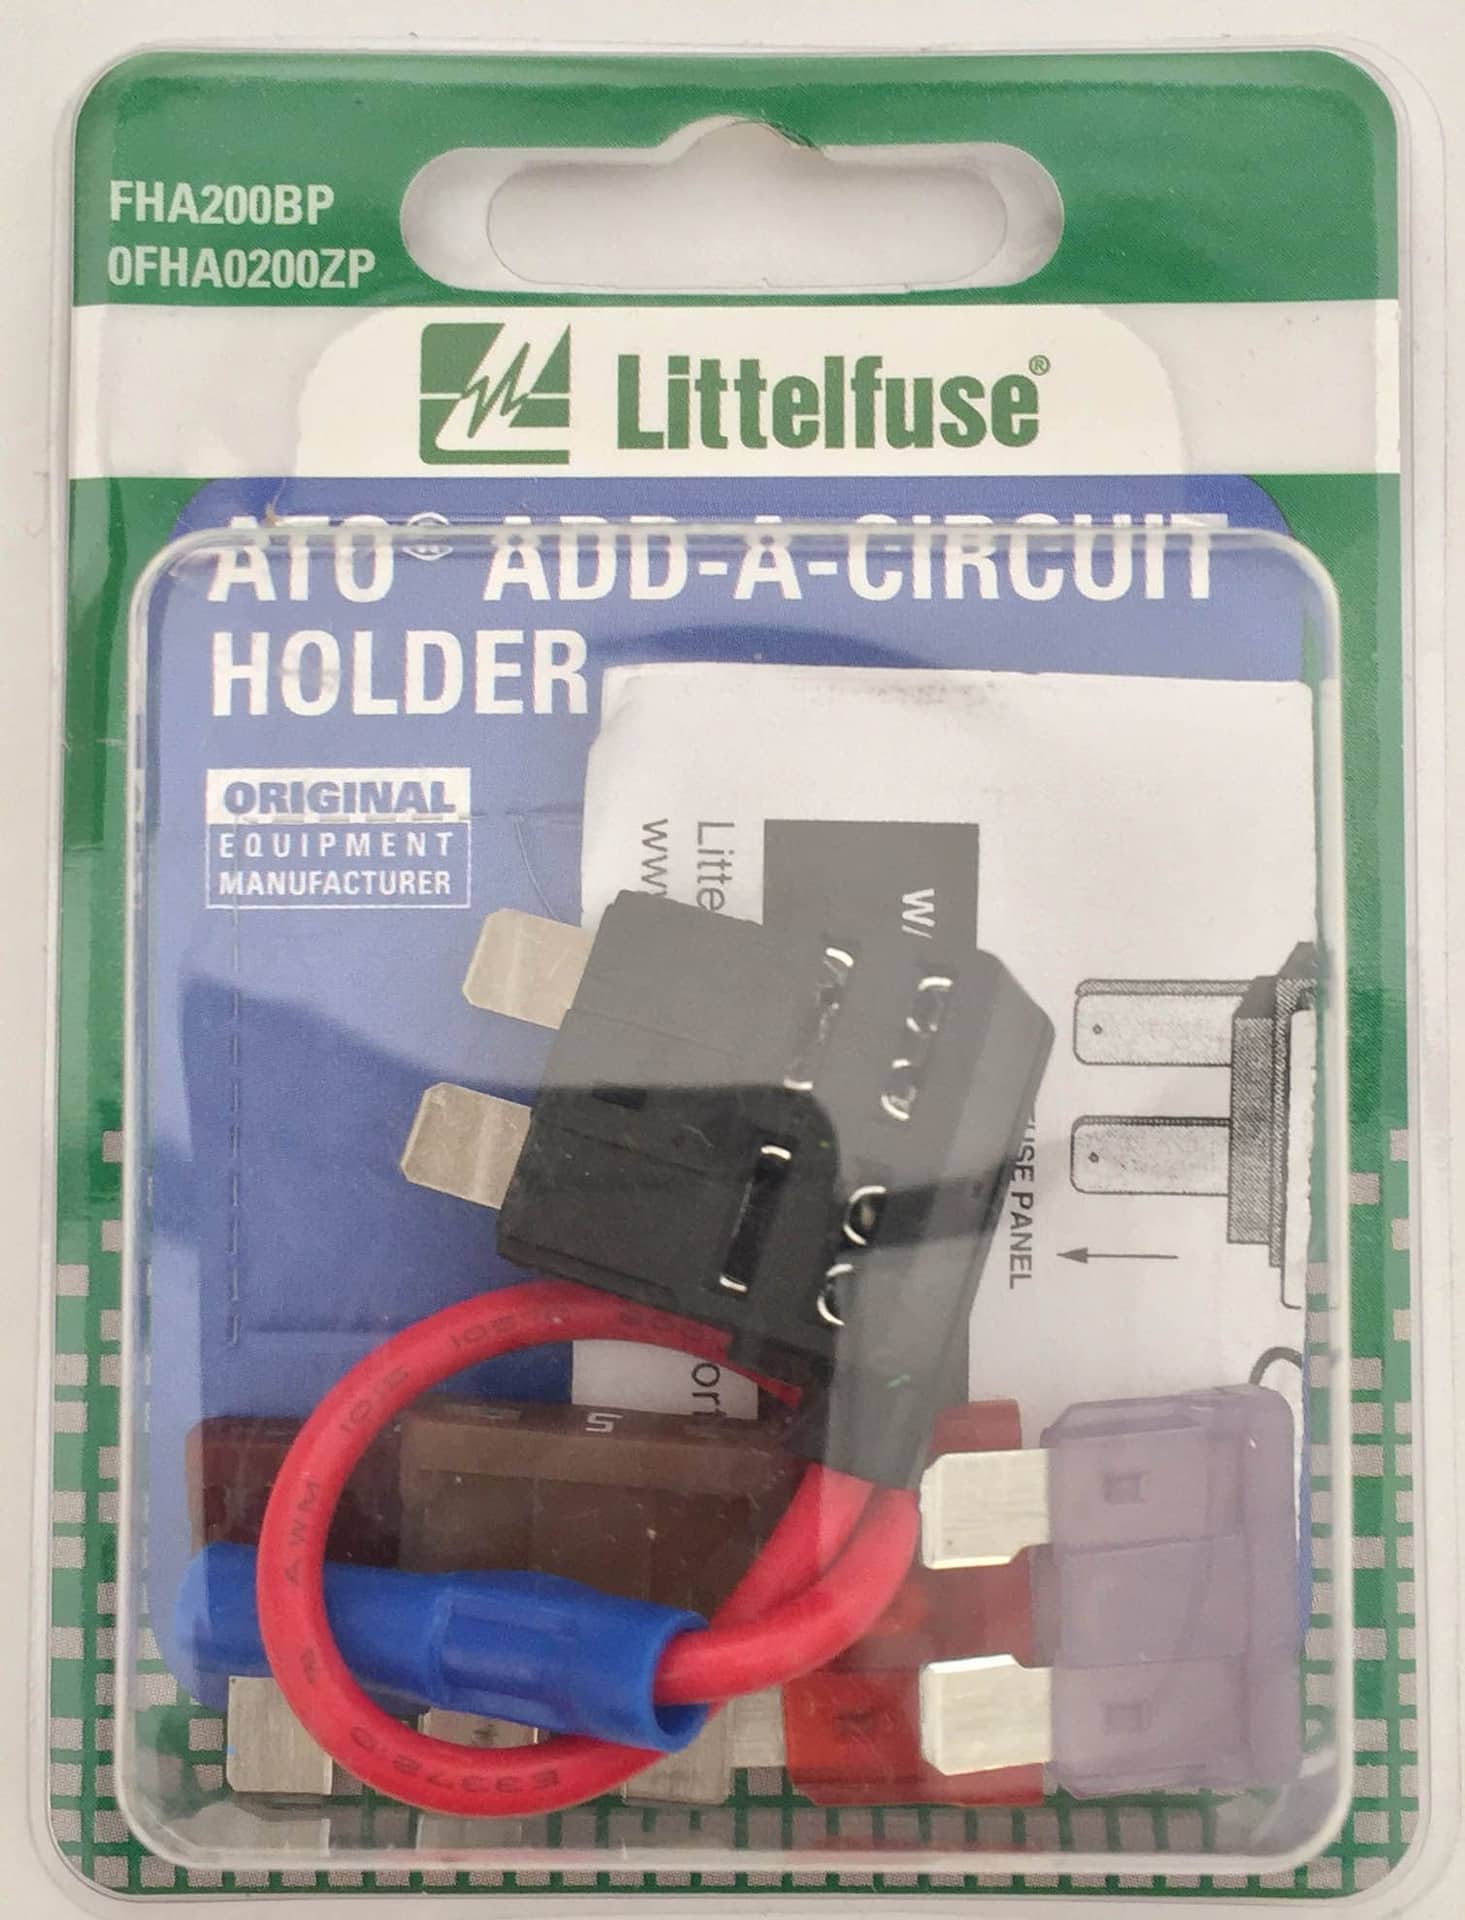 Porte-fusibles Littelfuse Add-a-Circuit, ATO